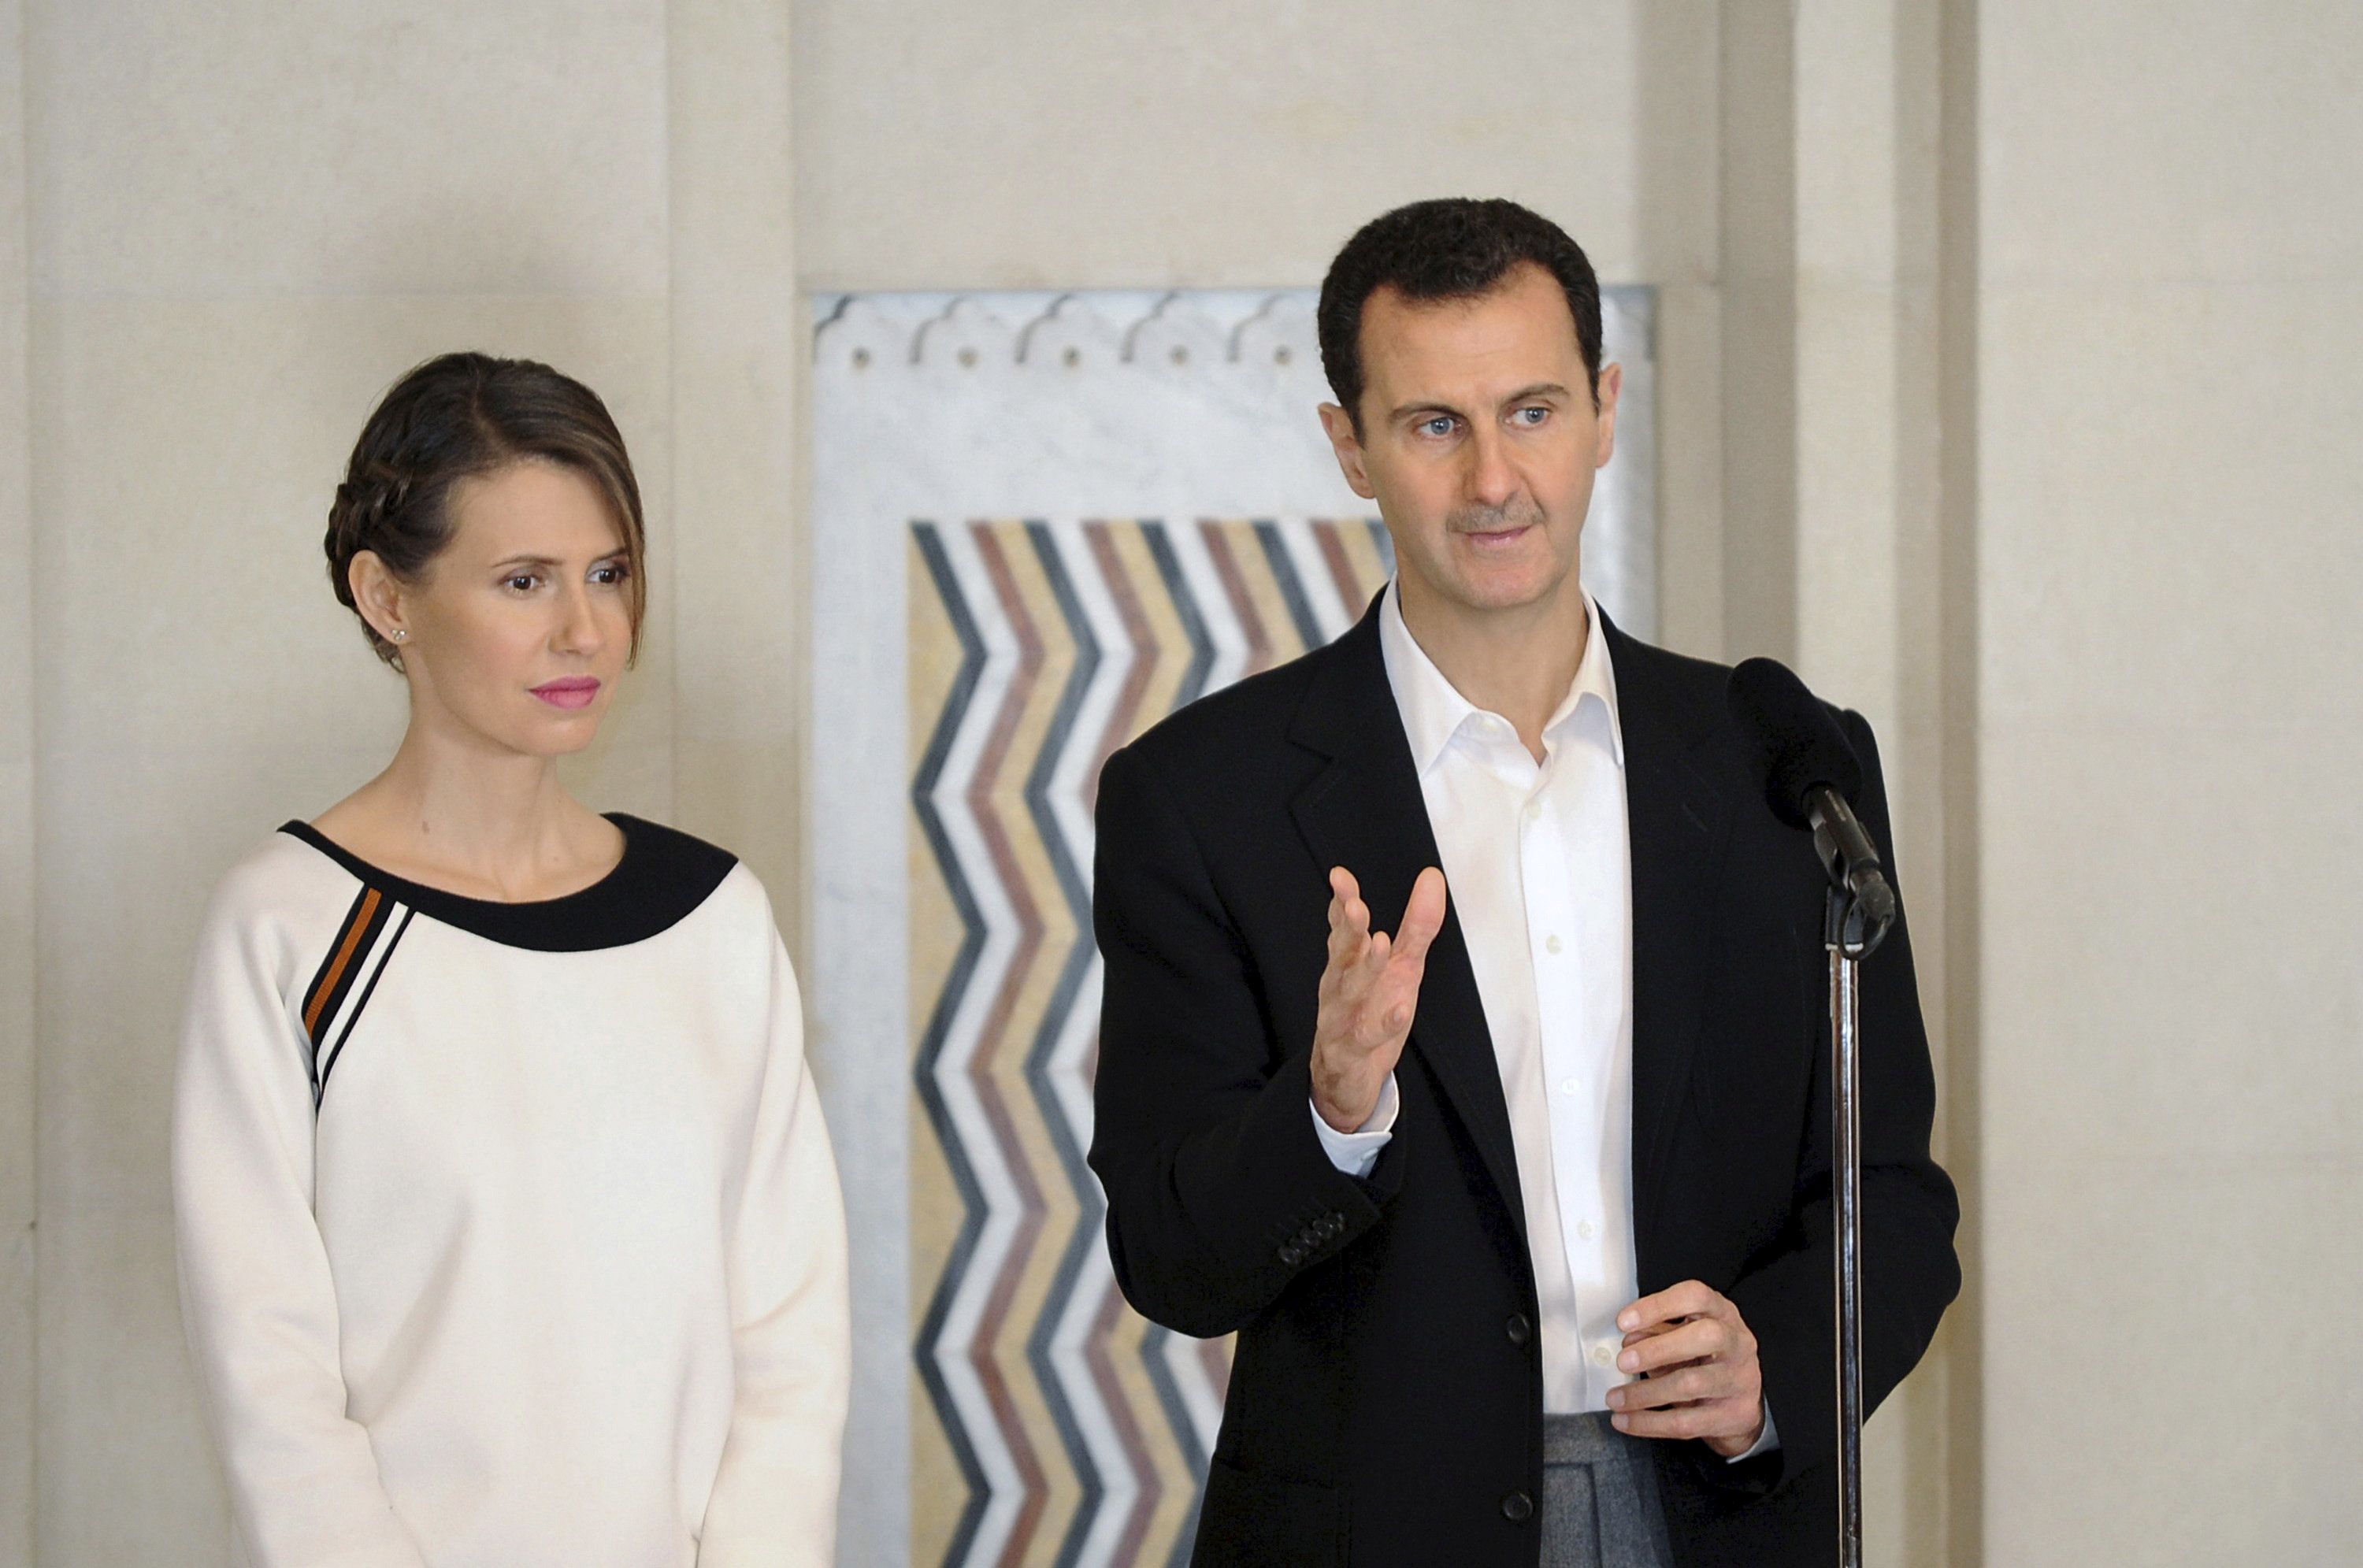 Arreglo de conflicto sirio depende de voluntad de Trump: Al-Assad